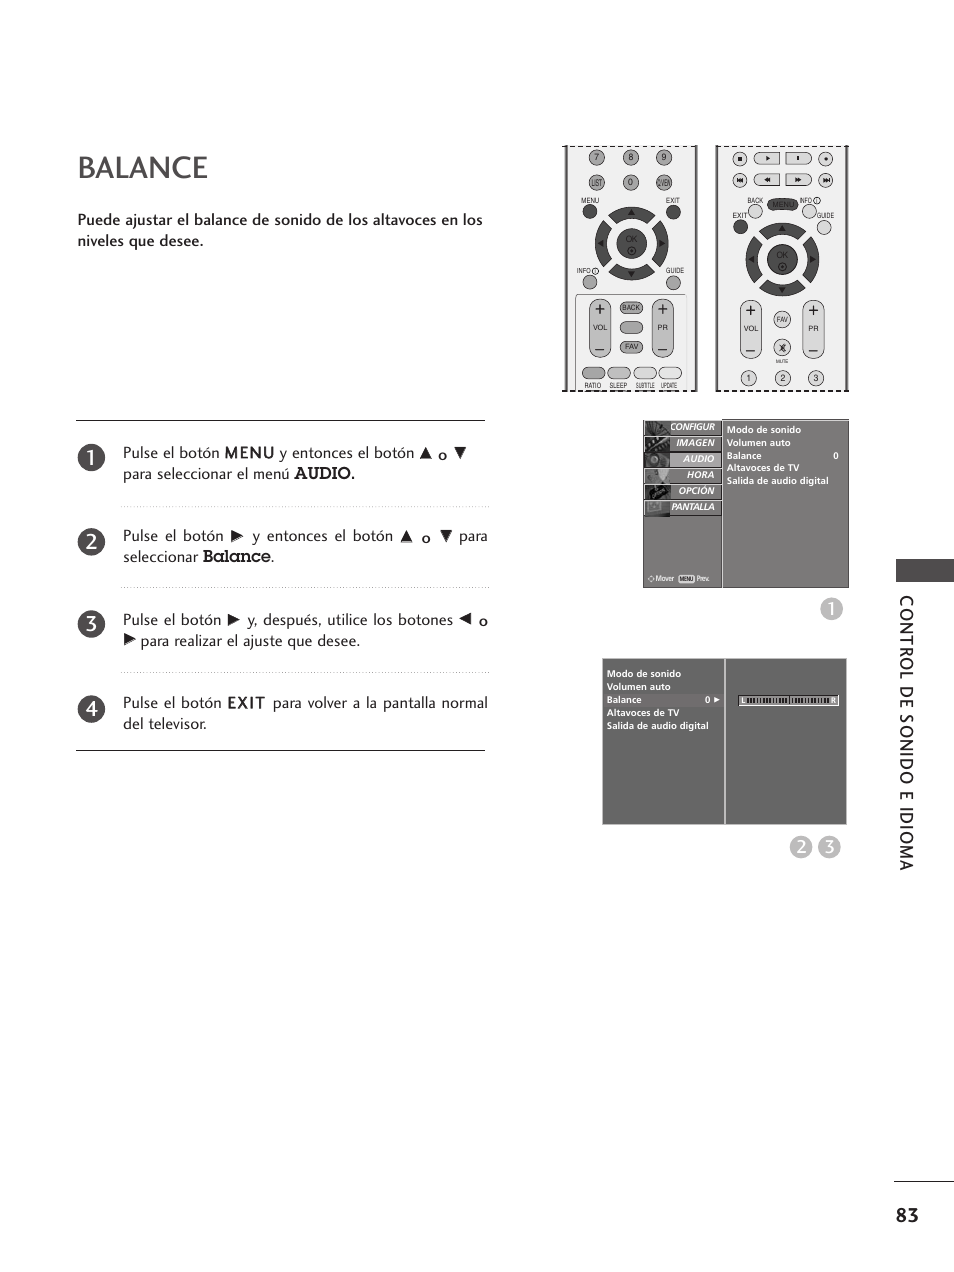 Balance, Contr ol de sonido e idioma 3 2, Para seleccionar el menú audio. pulse el botón | Y entonces el botón, Para seleccionar balance. pulse el botón, Y, después, utilice los botones | LG 32LB75 Manual del usuario | Página 85 / 120